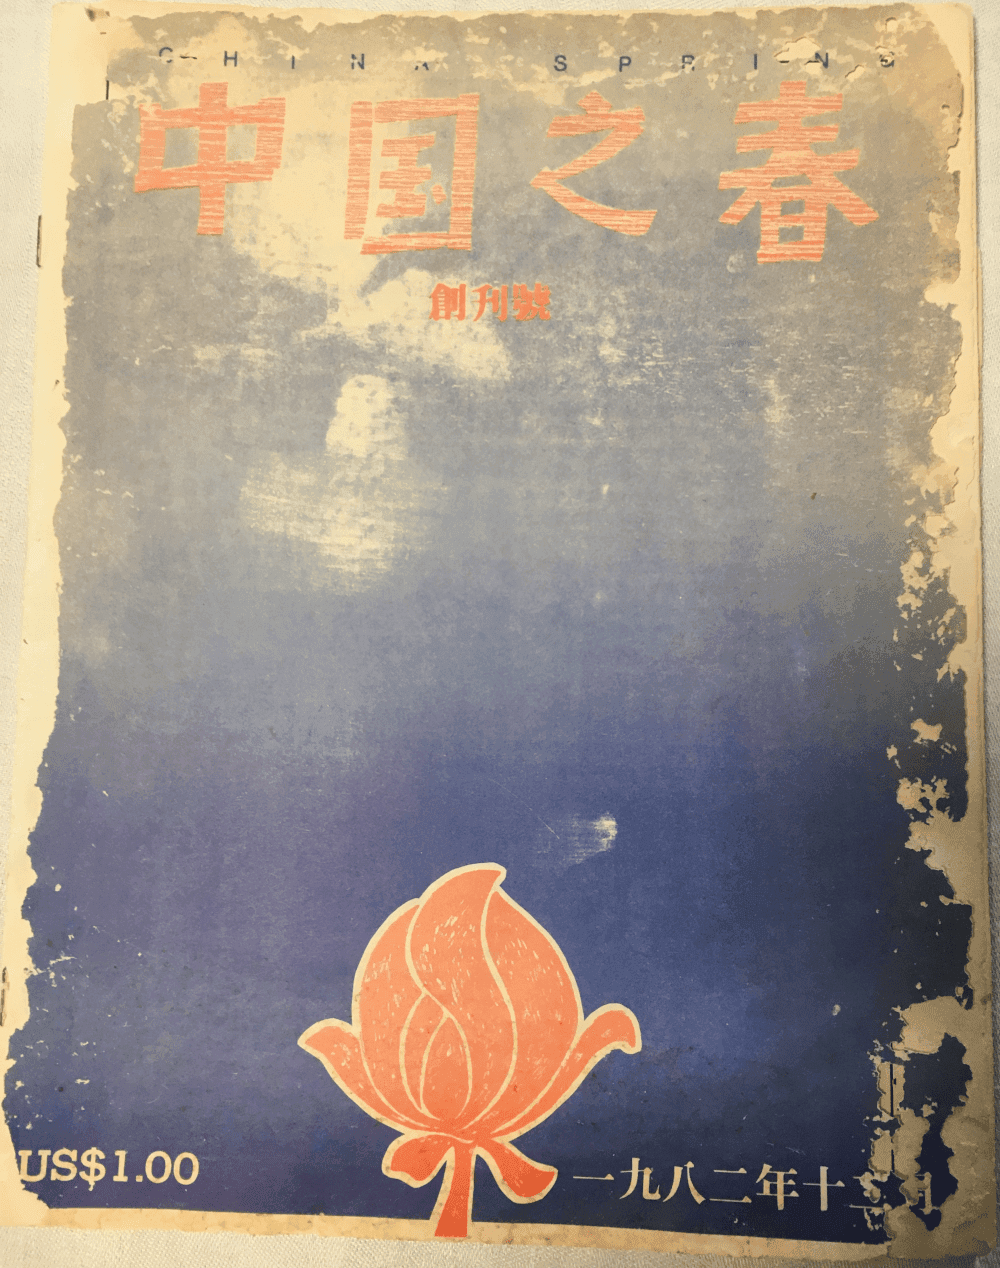 這是王炳章博士赴越南前委託女兒保存的第一本中國之春創刊號。至今整整40年。它是歷史的見證！